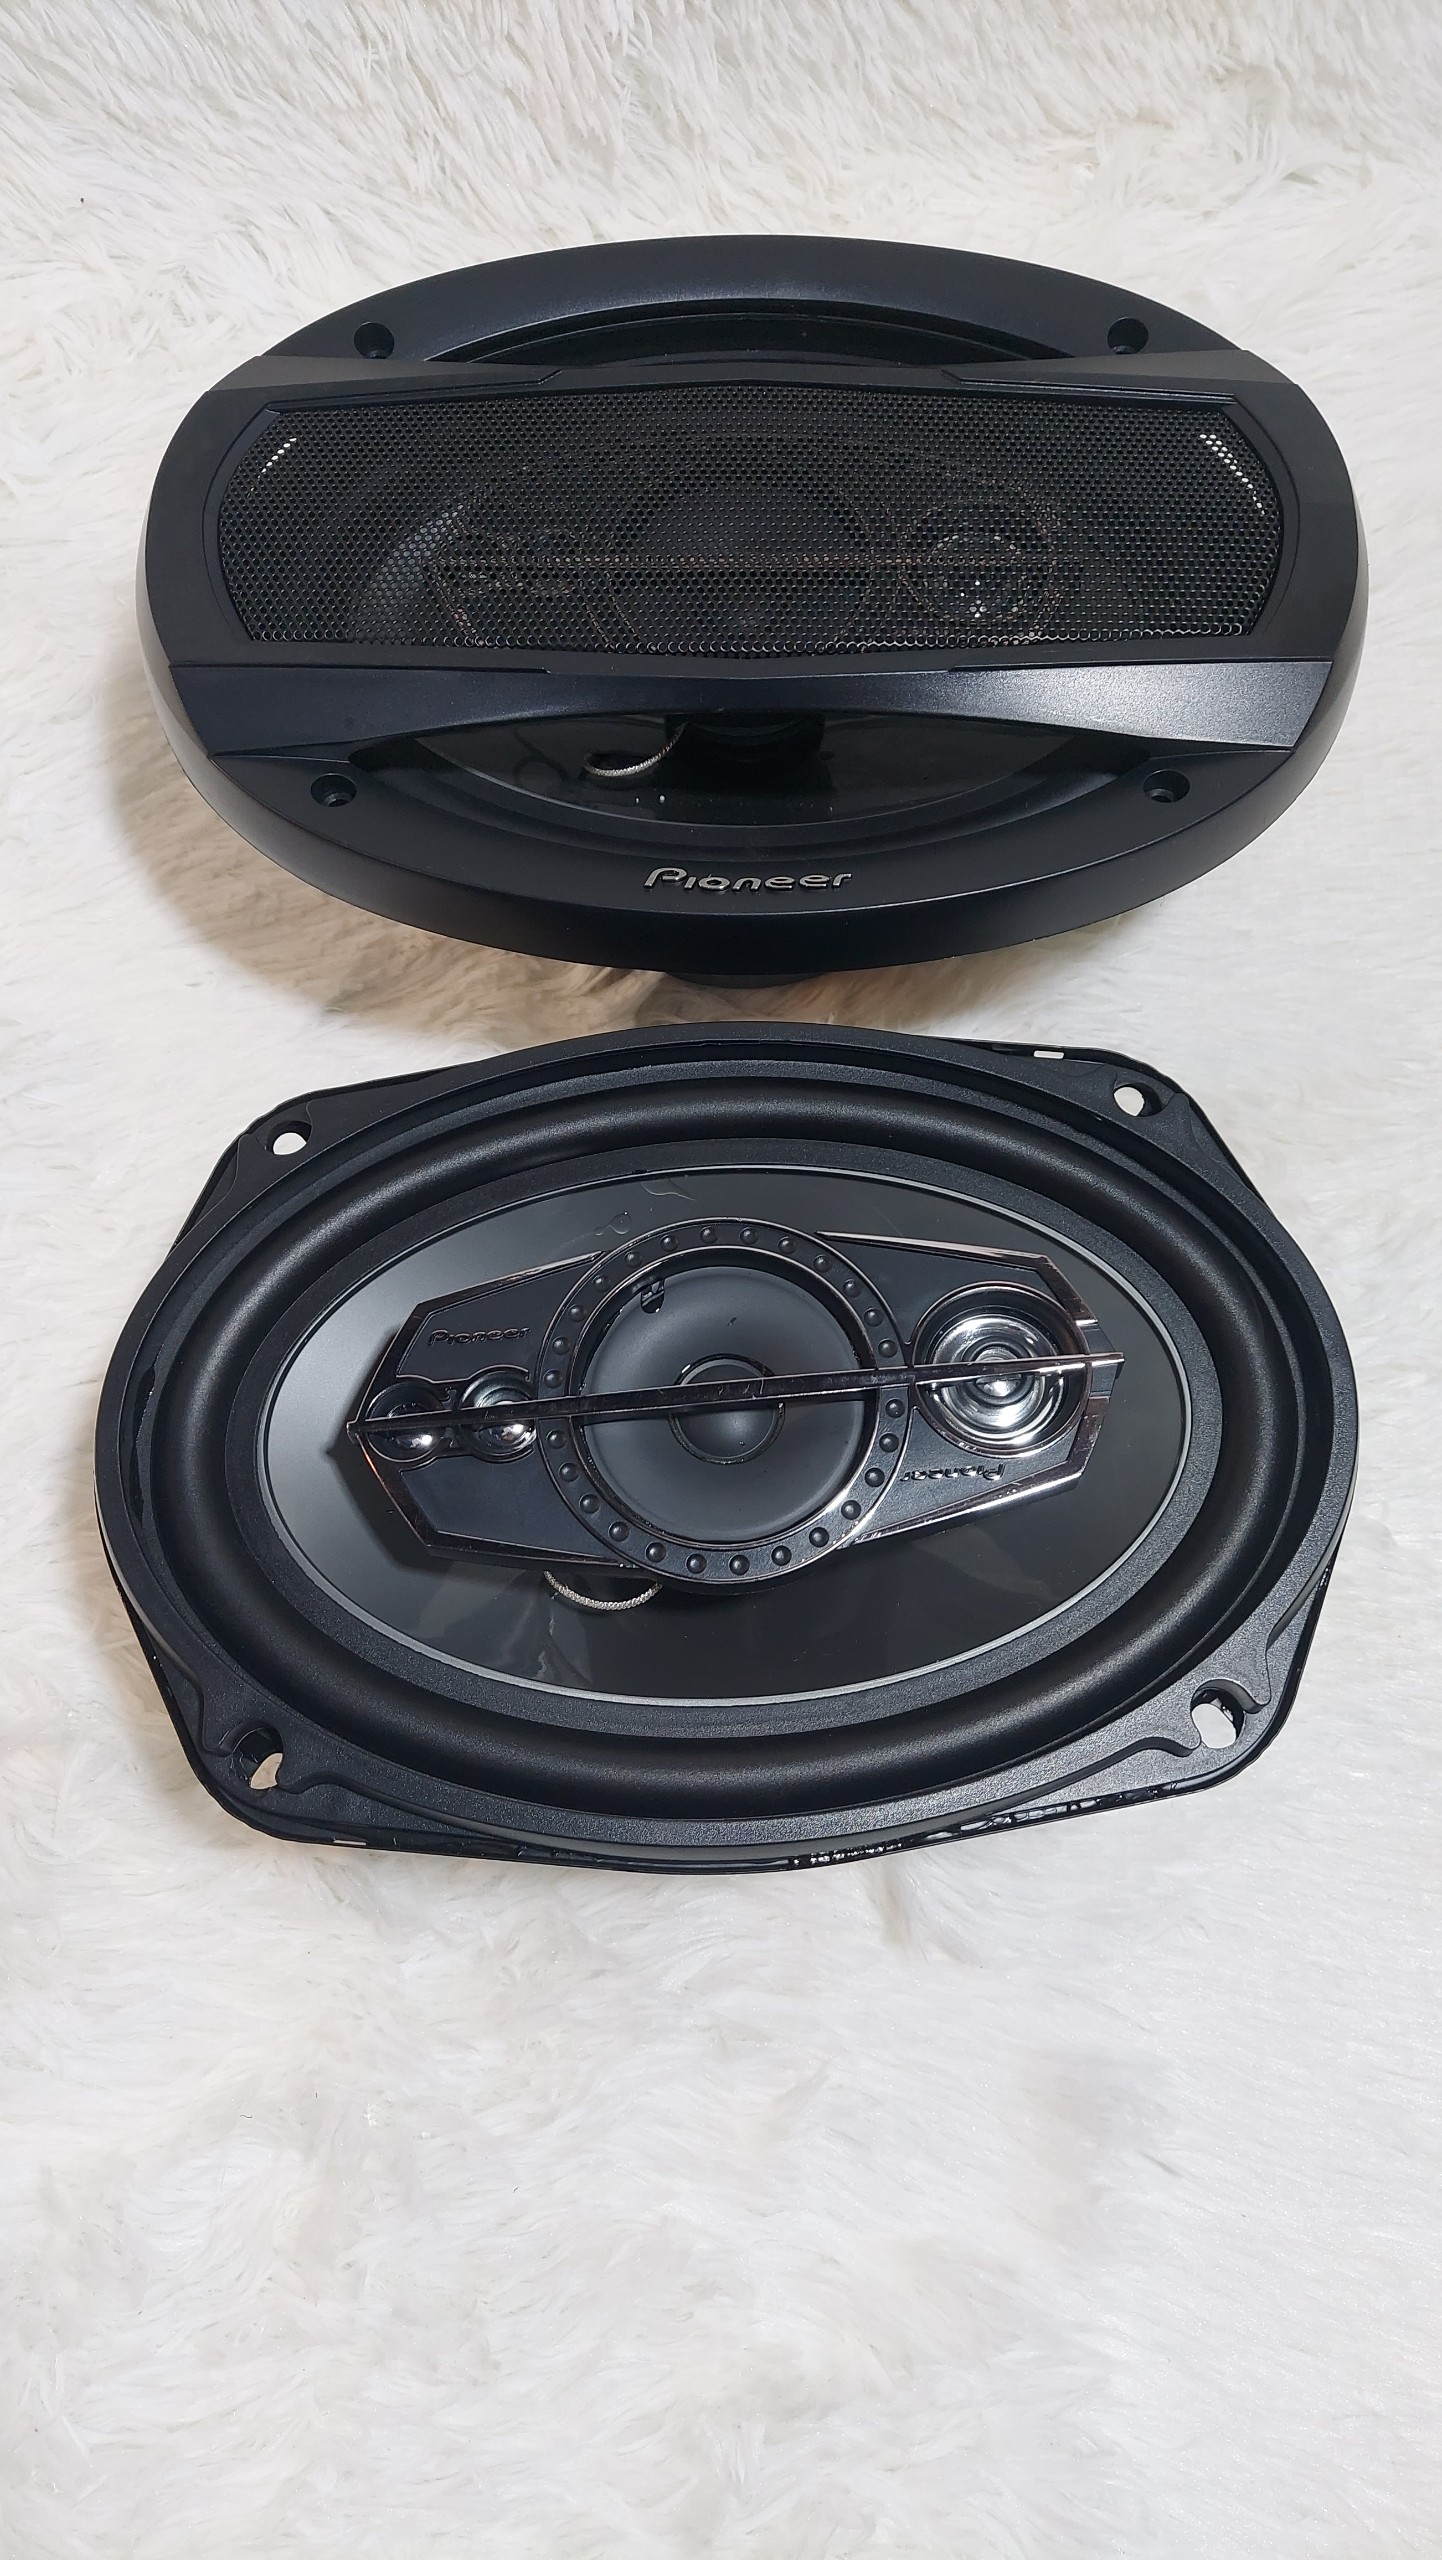 Loa ô tô - Cặp Loa Cánh Cửa  PIONEER 600W 6x9 inch (163x237 mm). Độ âm thanh cực chất cho xế yêu.